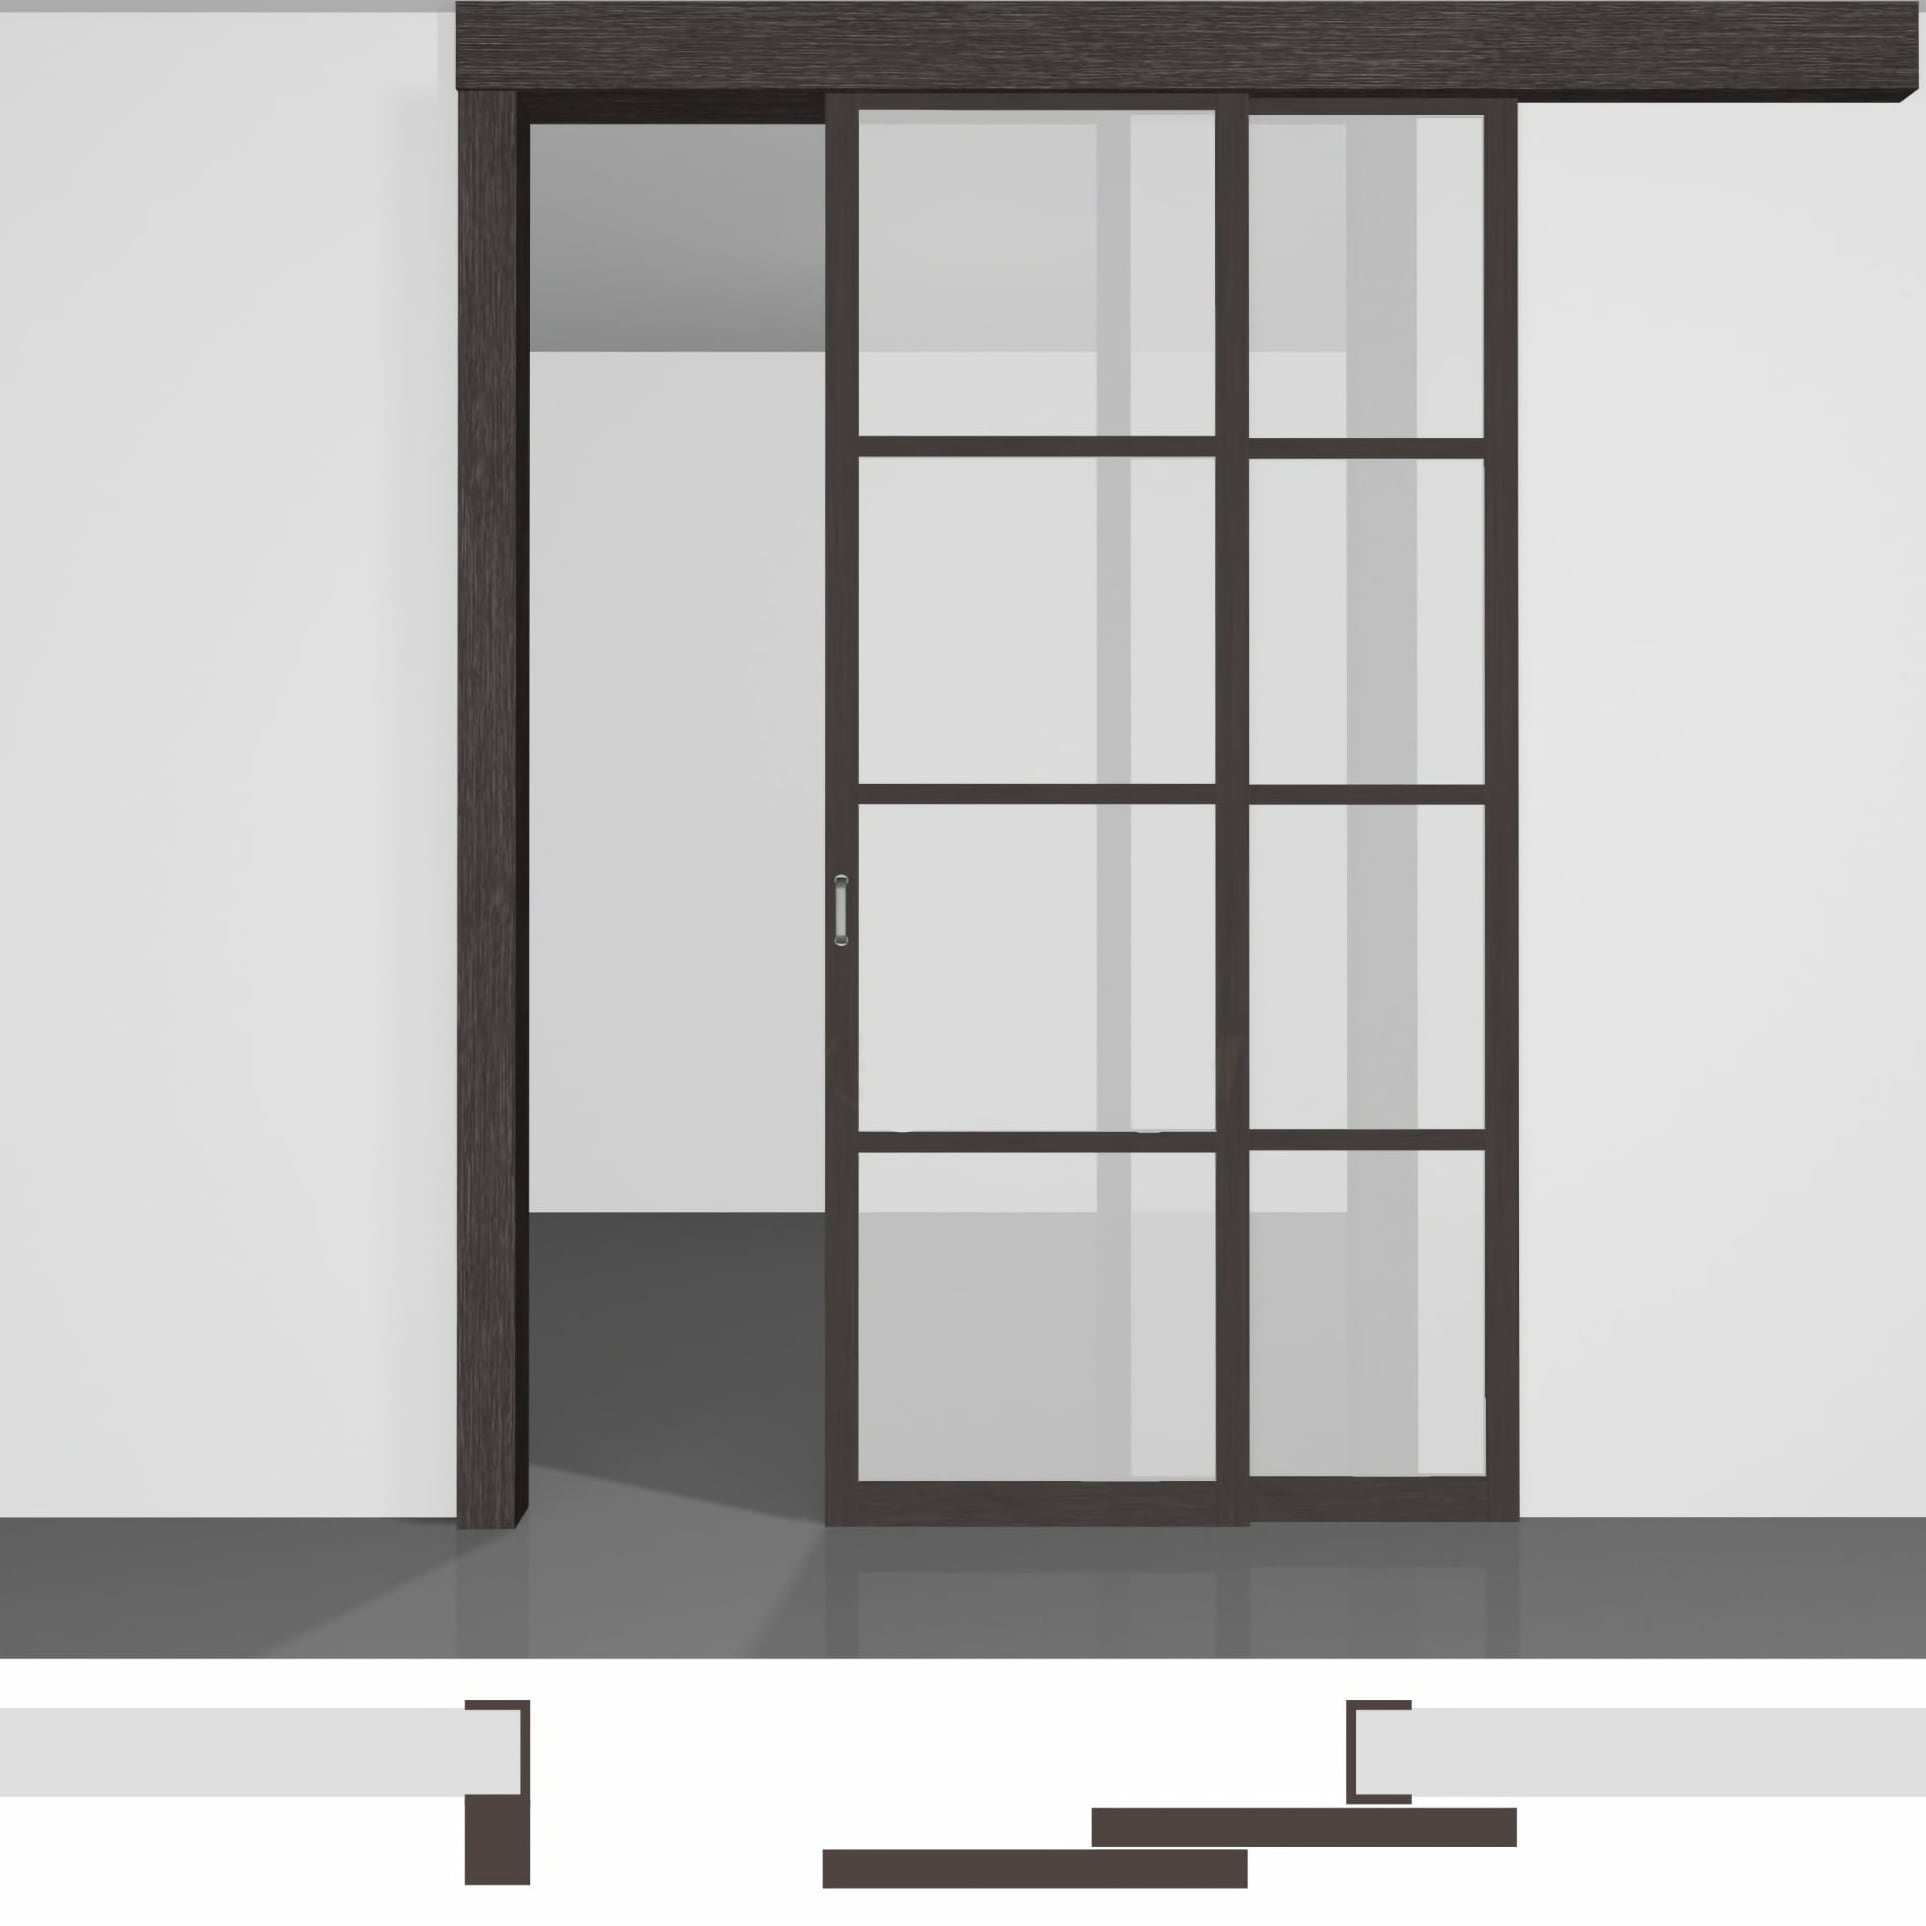 Скляні розсувні двері P02.1в • два полотна висотою до 2430 мм вздовж стіни • екошпон